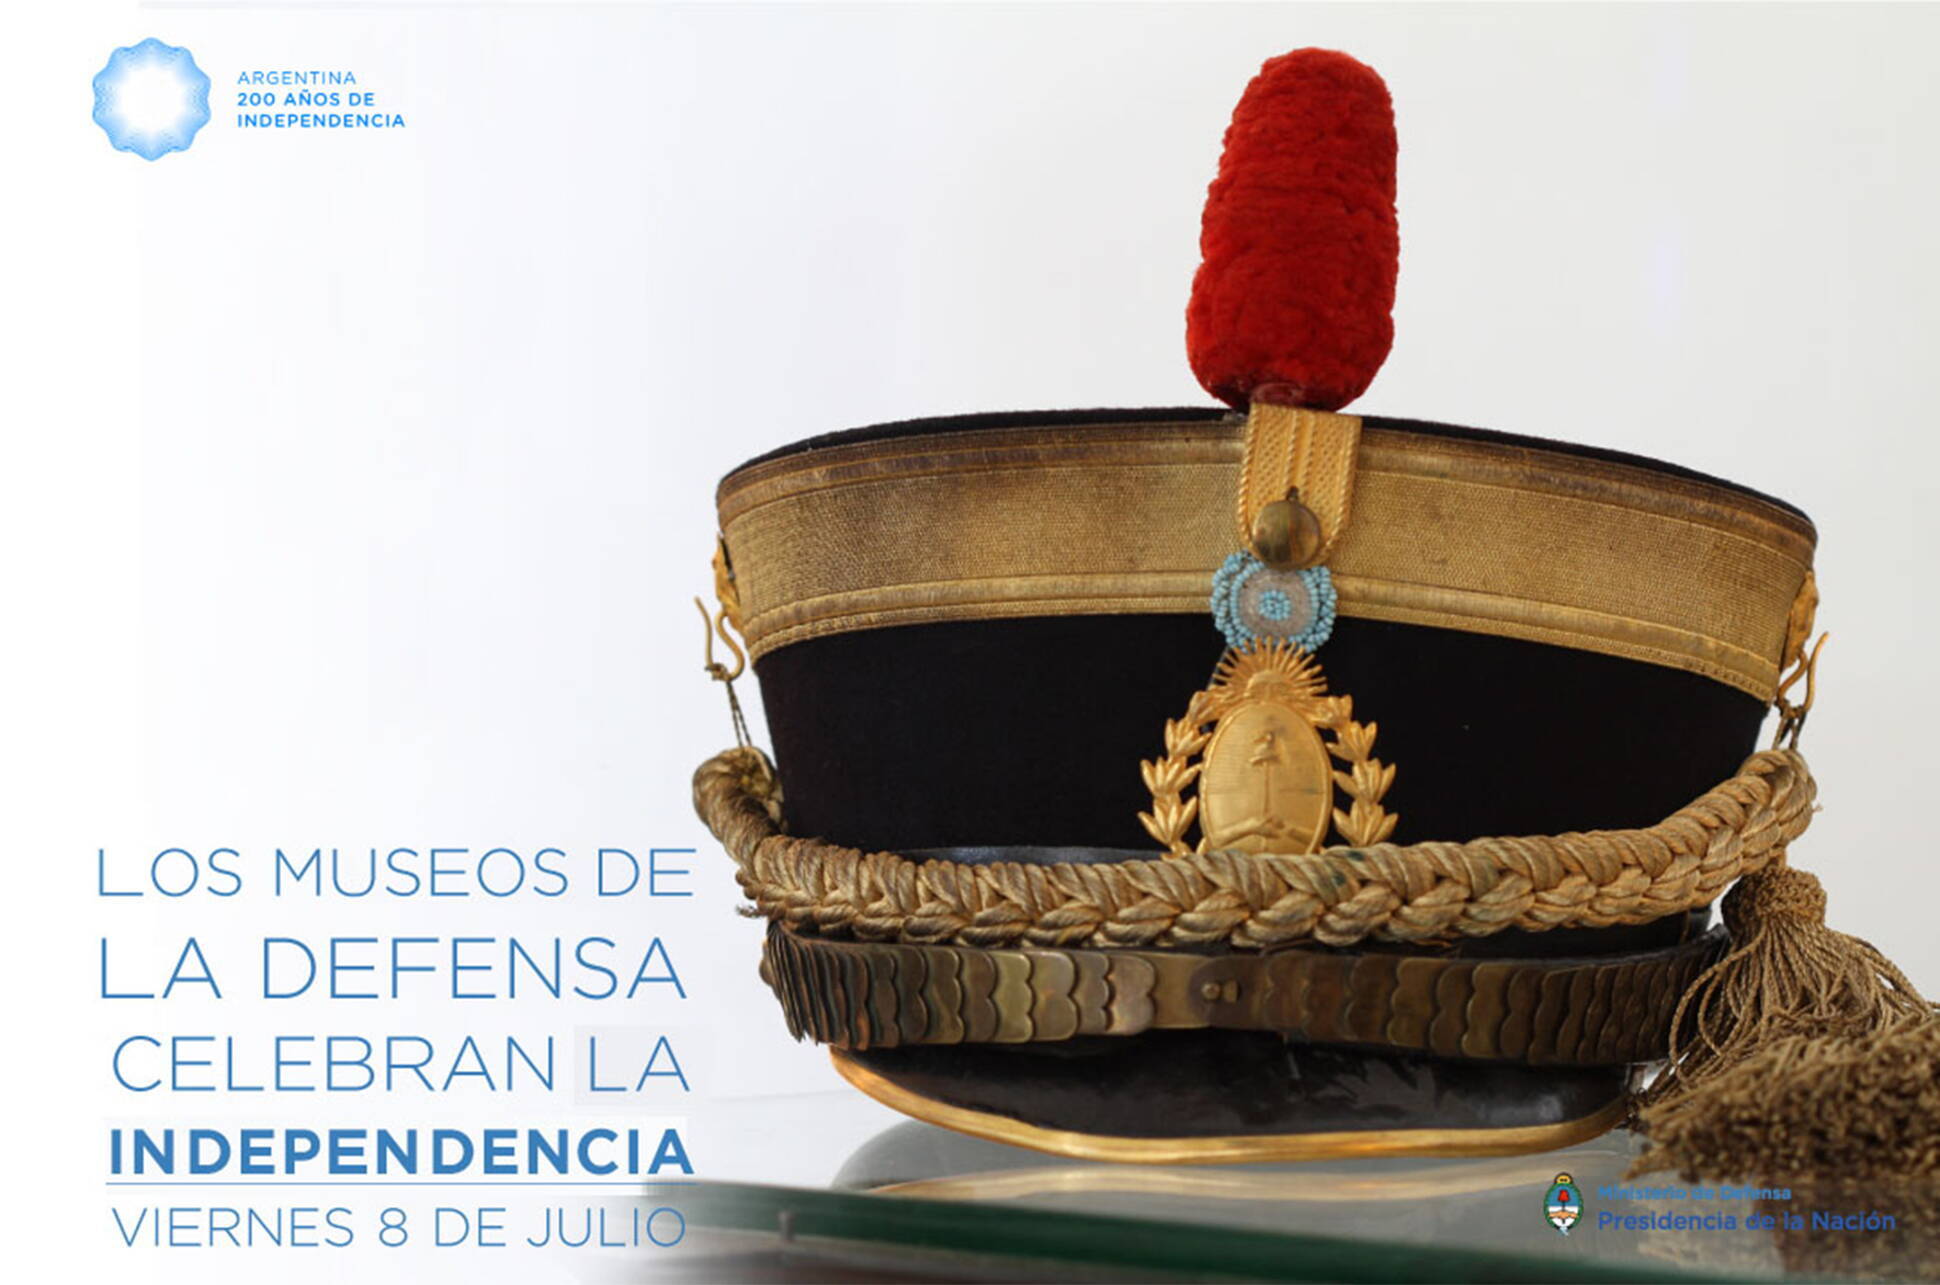 Los museos del Ministerio de Defensa abren sus puertas para el Bicentenario de la Independencia